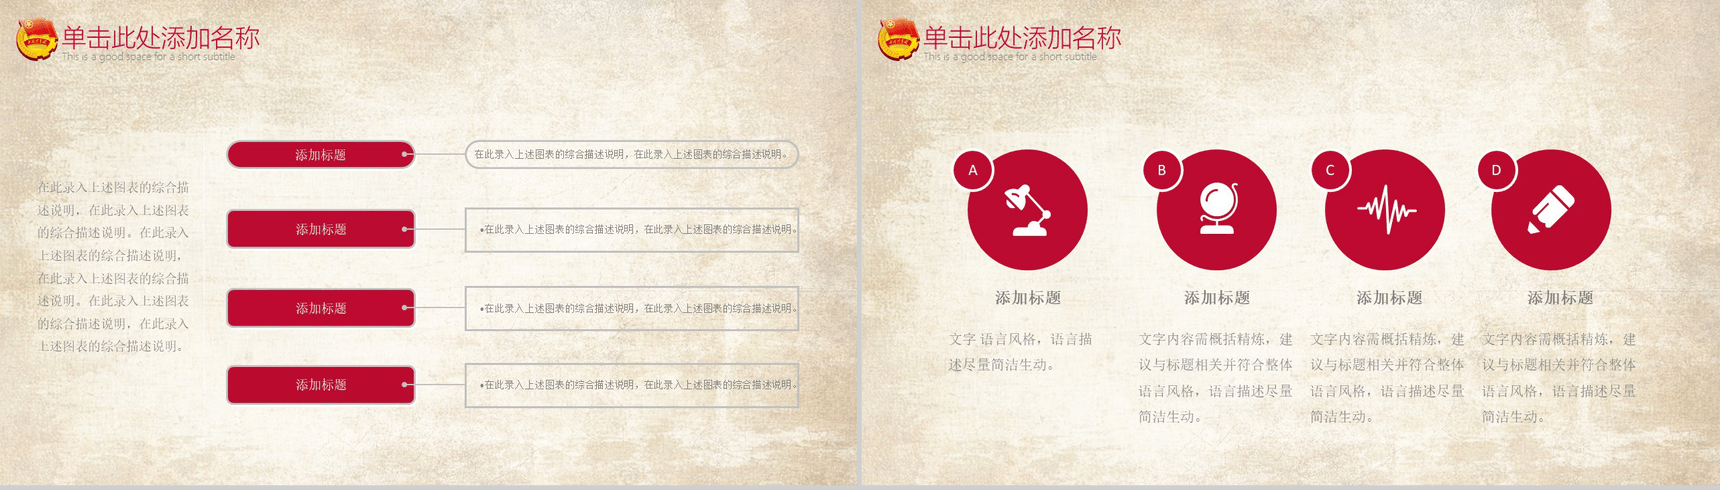 中国共青团一学一做精神教学党政PPT模板-4